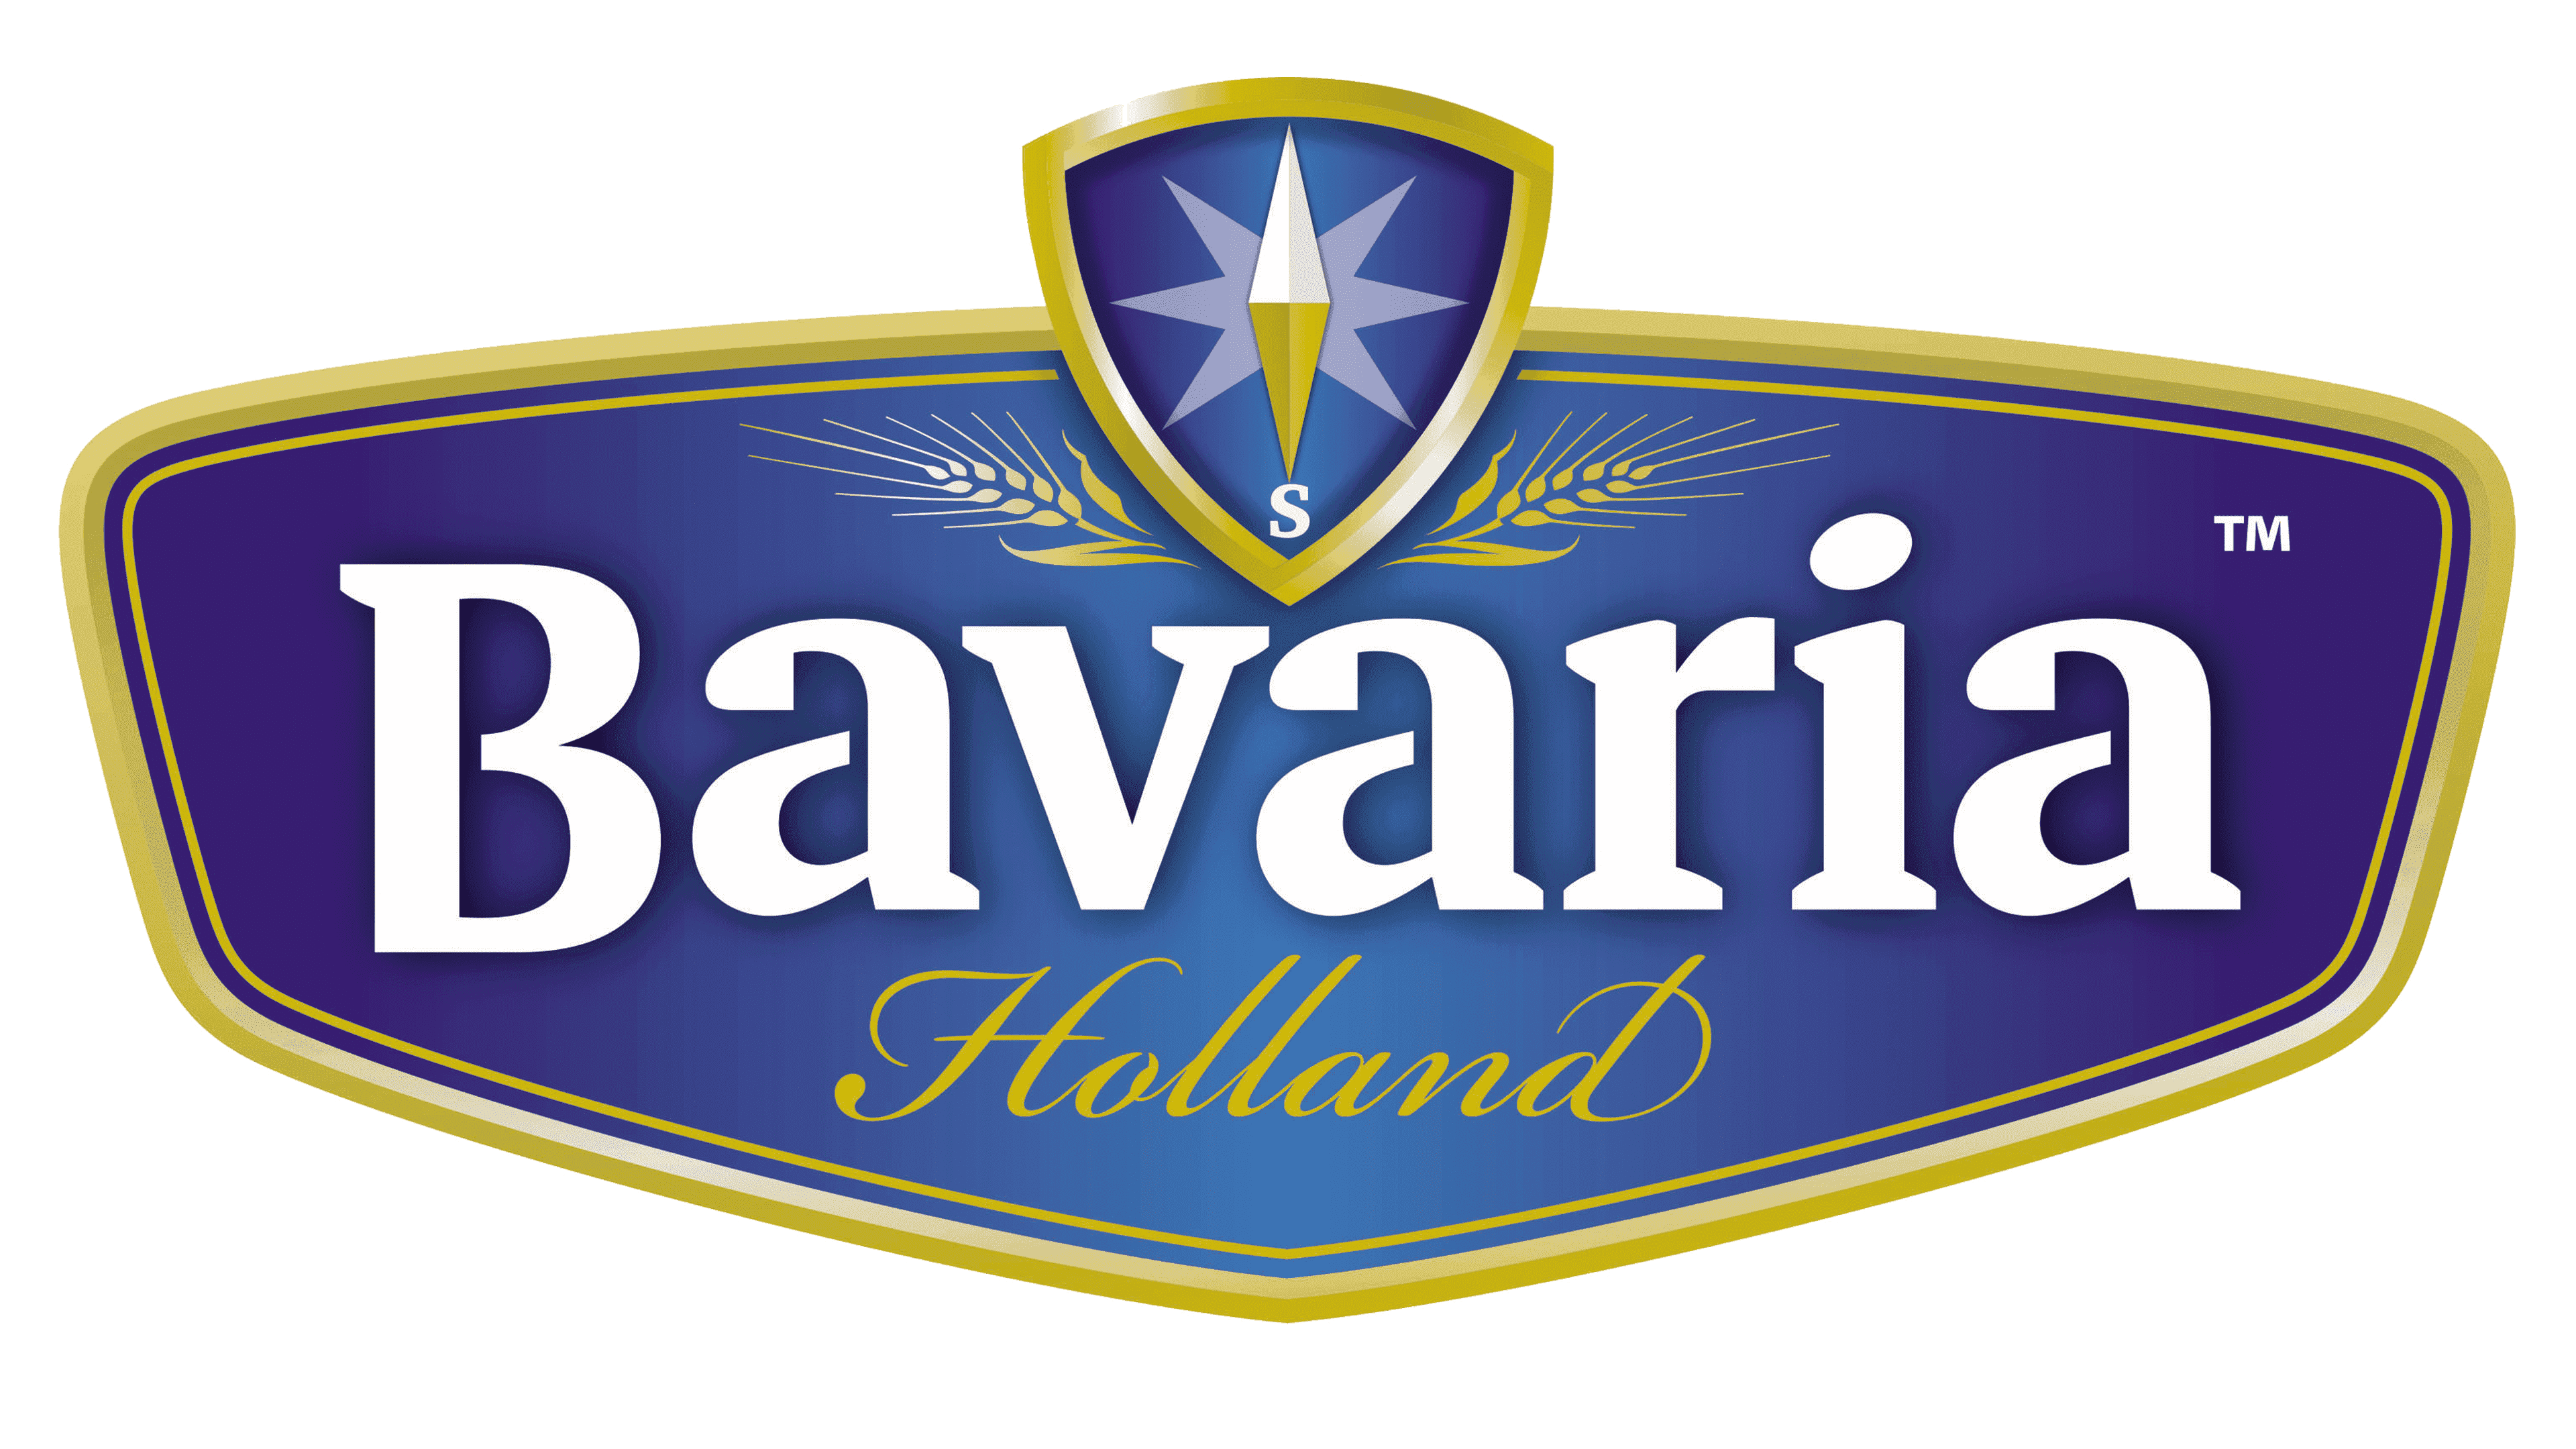 Bavaria-Logo